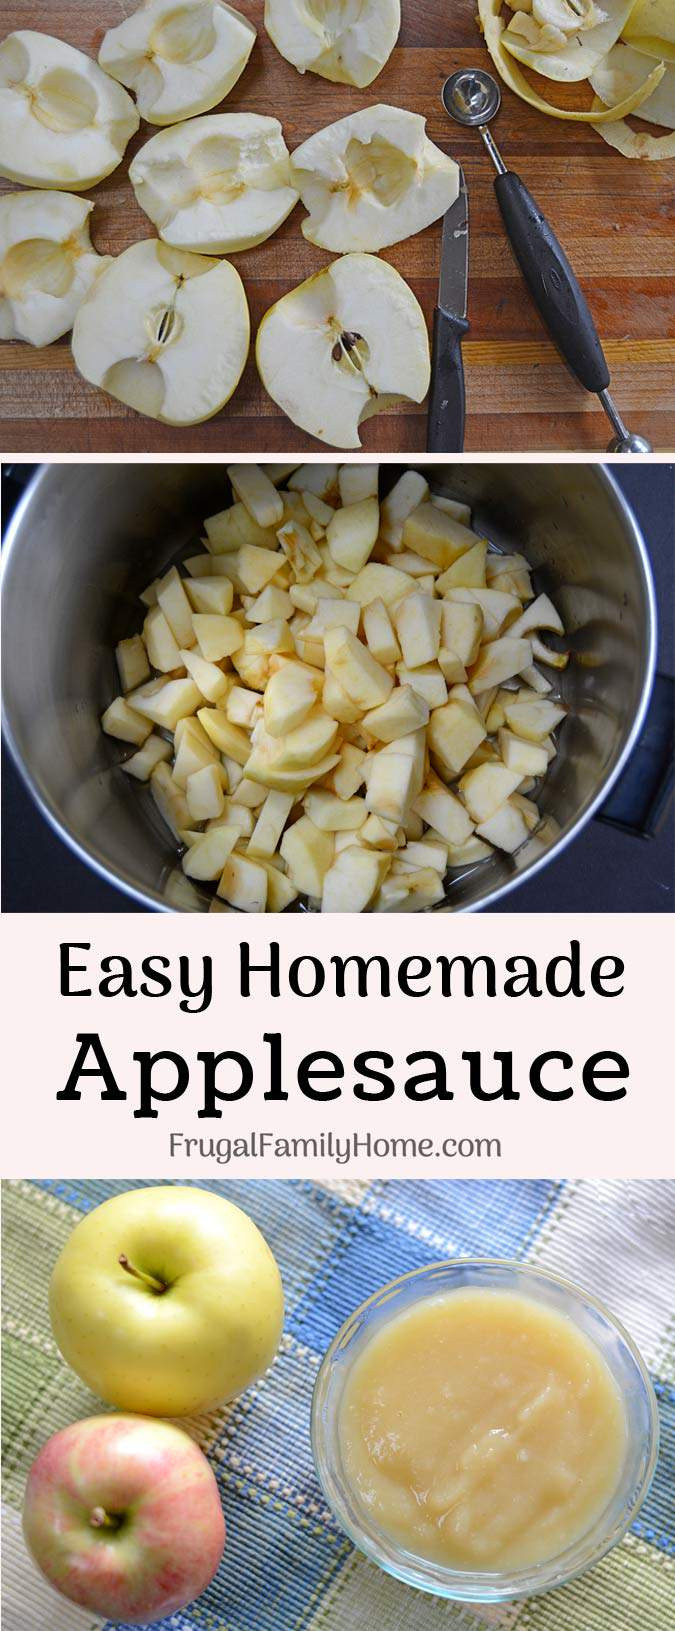 Easy Applesauce Recipe
 How to Make Homemade Applesauce Easy Recipe